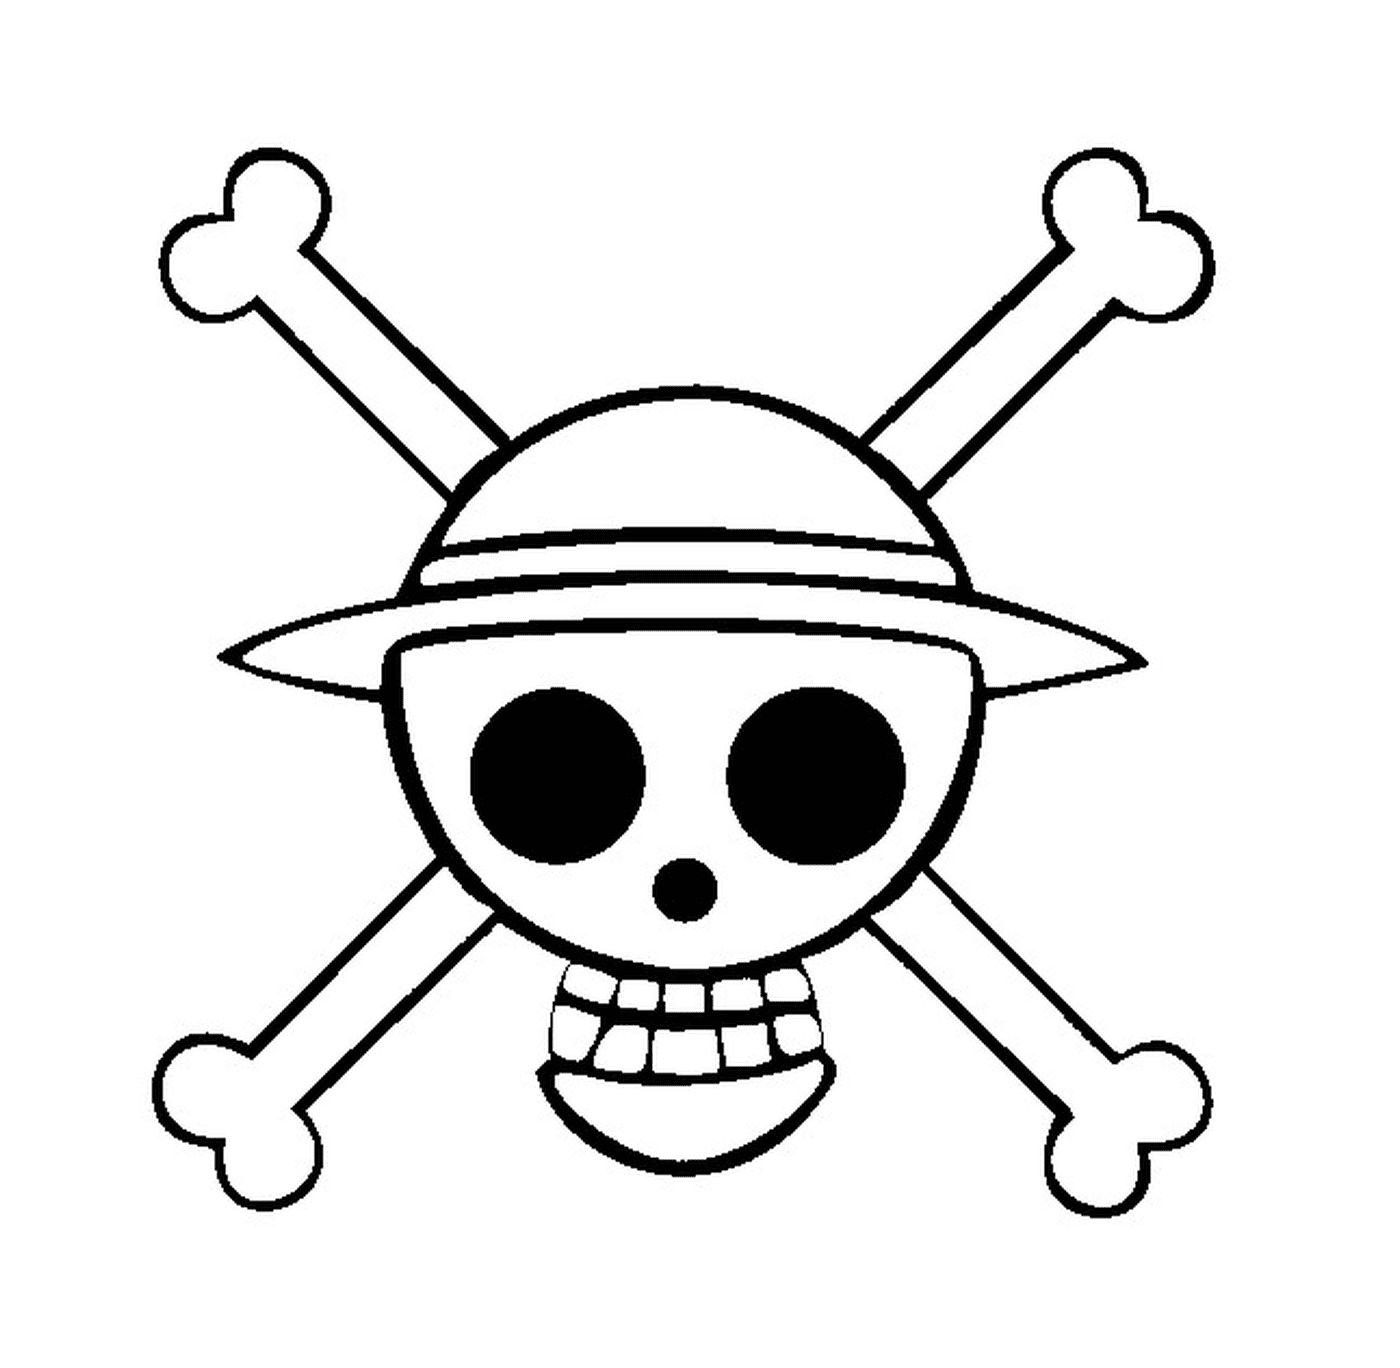  Einteiliges Logo, Piratensymbol 